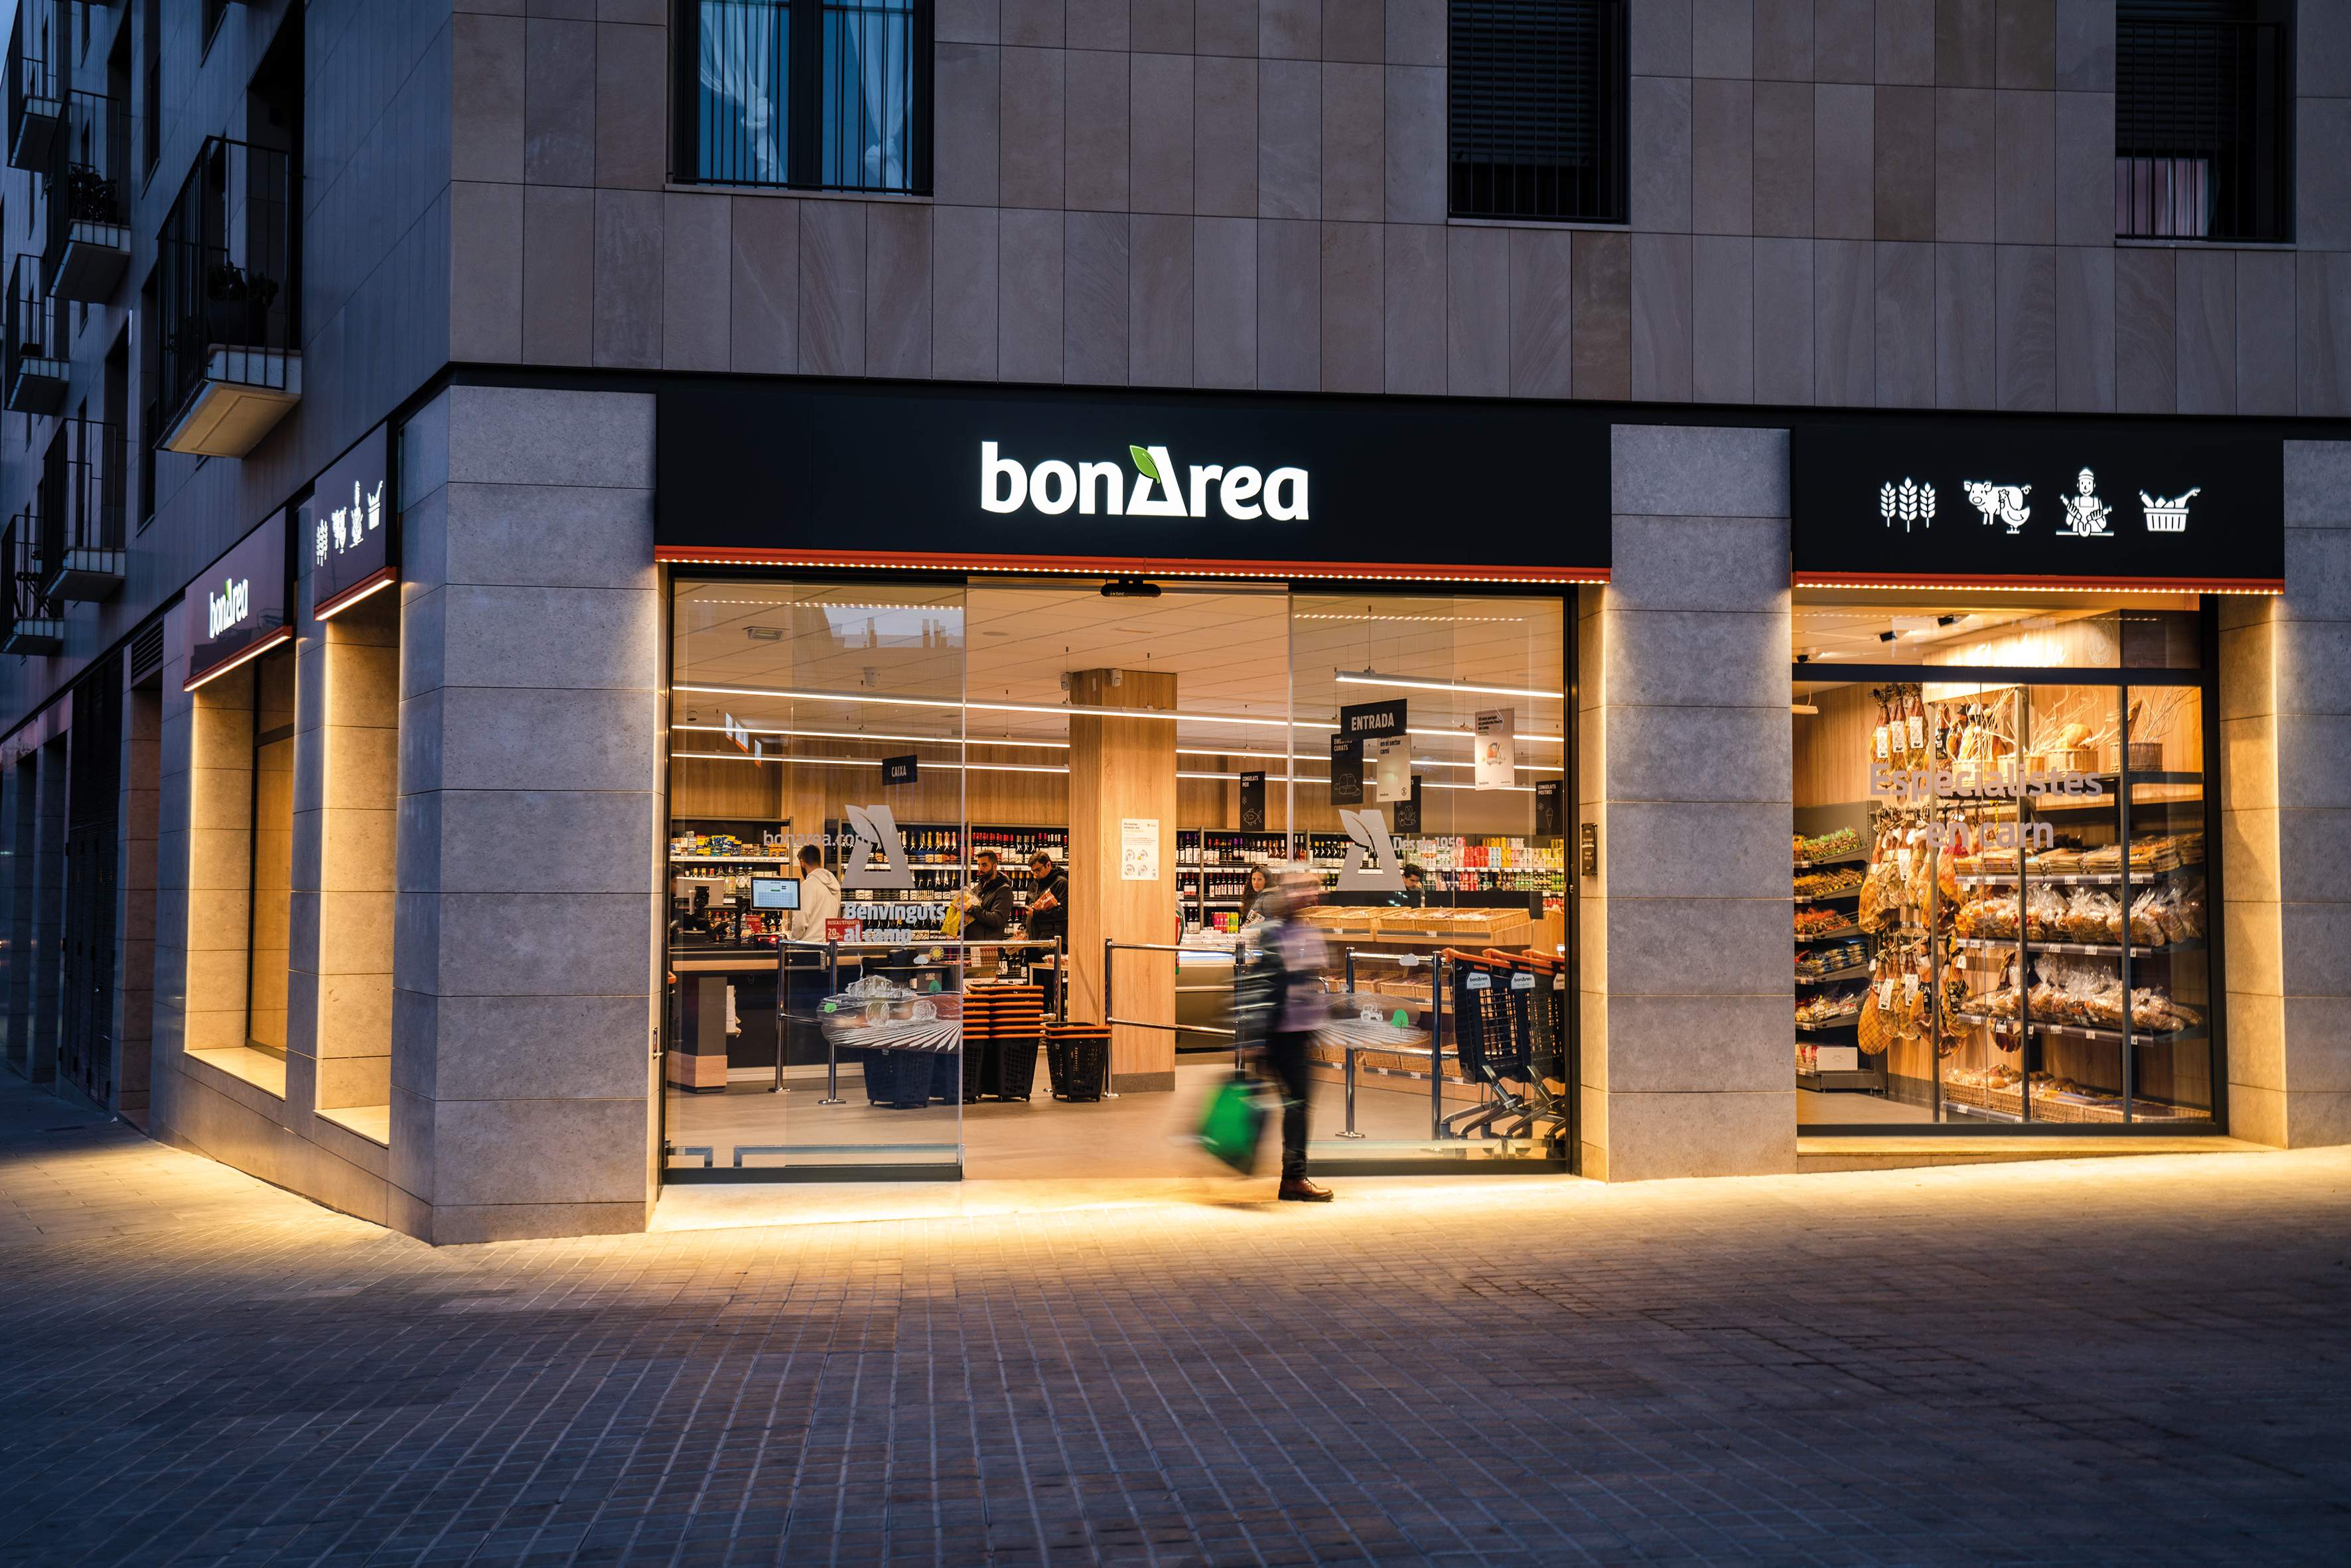 BonÀrea referma l’expansió a Espanya amb més obertures: tindrà 600 botigues